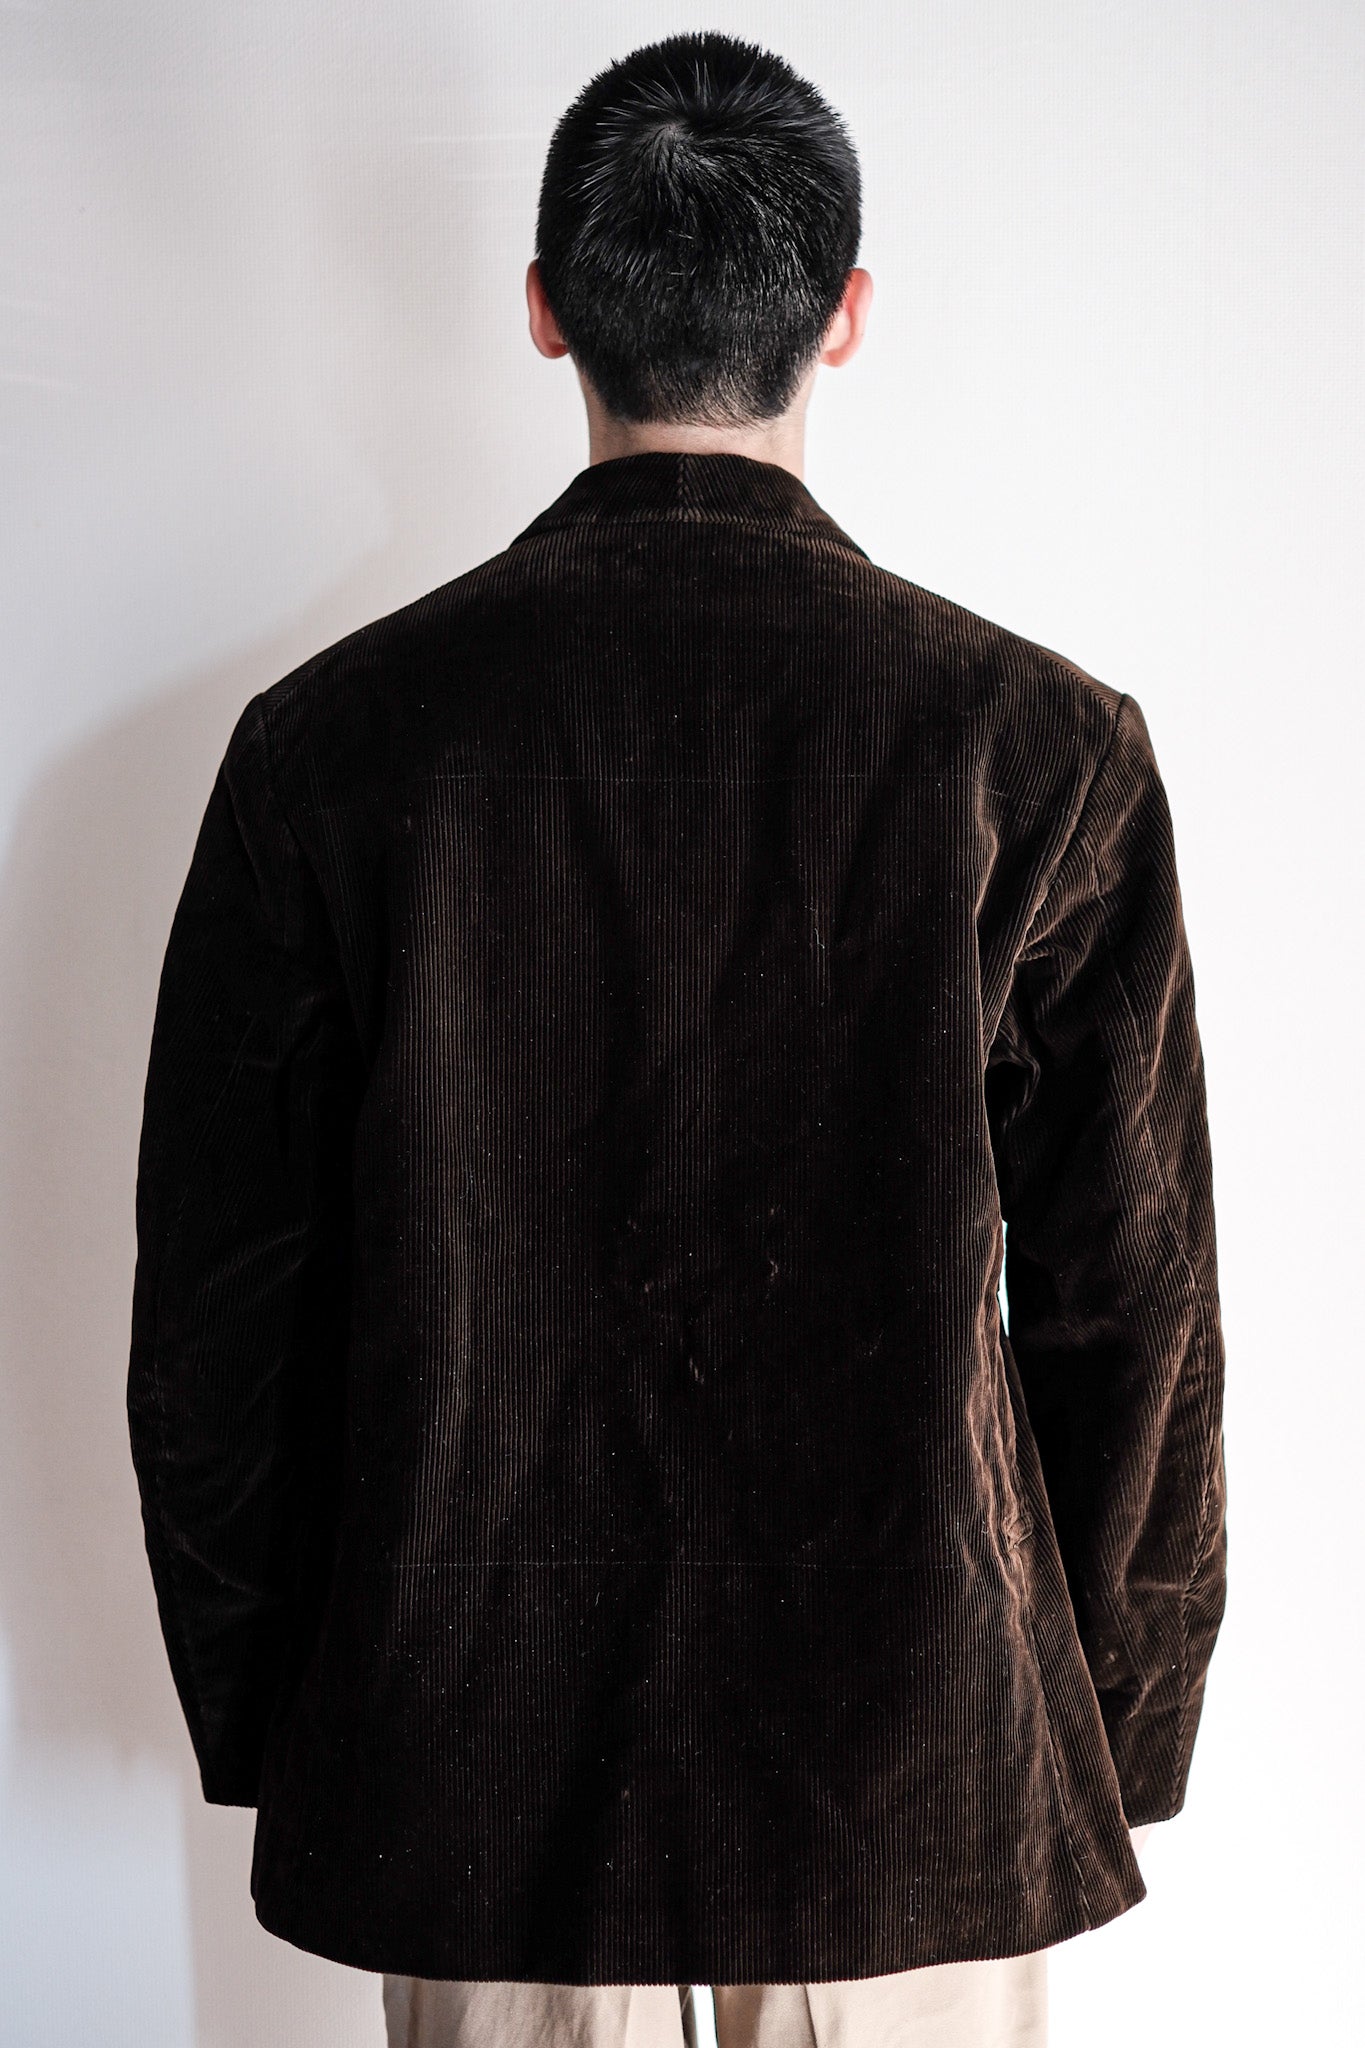 [~ 40 '] 프랑스 빈티지 다크 브라운 코듀로이 옷깃 사냥 재킷 "데드 스톡"